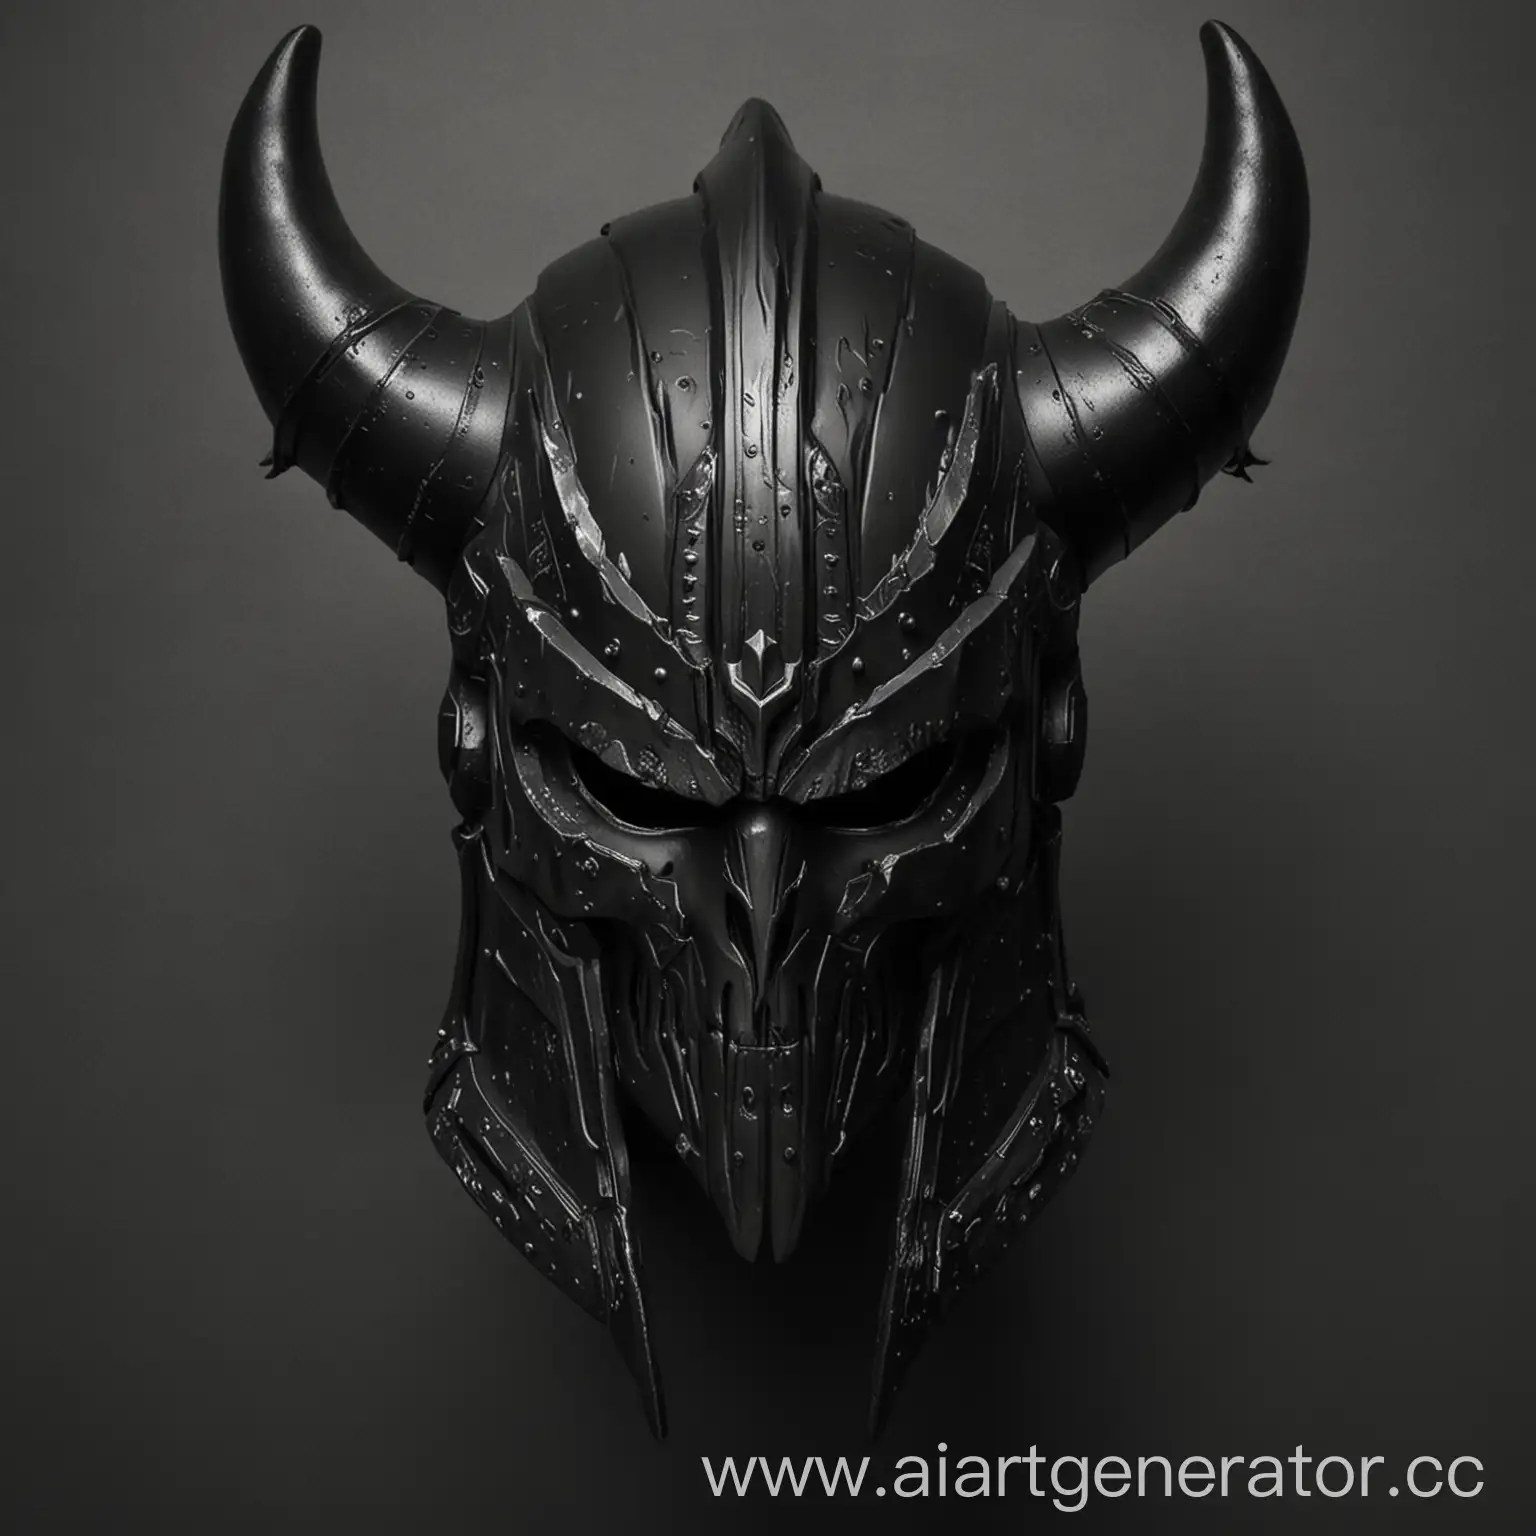 Spartan-Helmet-with-Devil-Jin-Horns-in-Black-Unique-Mask-Design